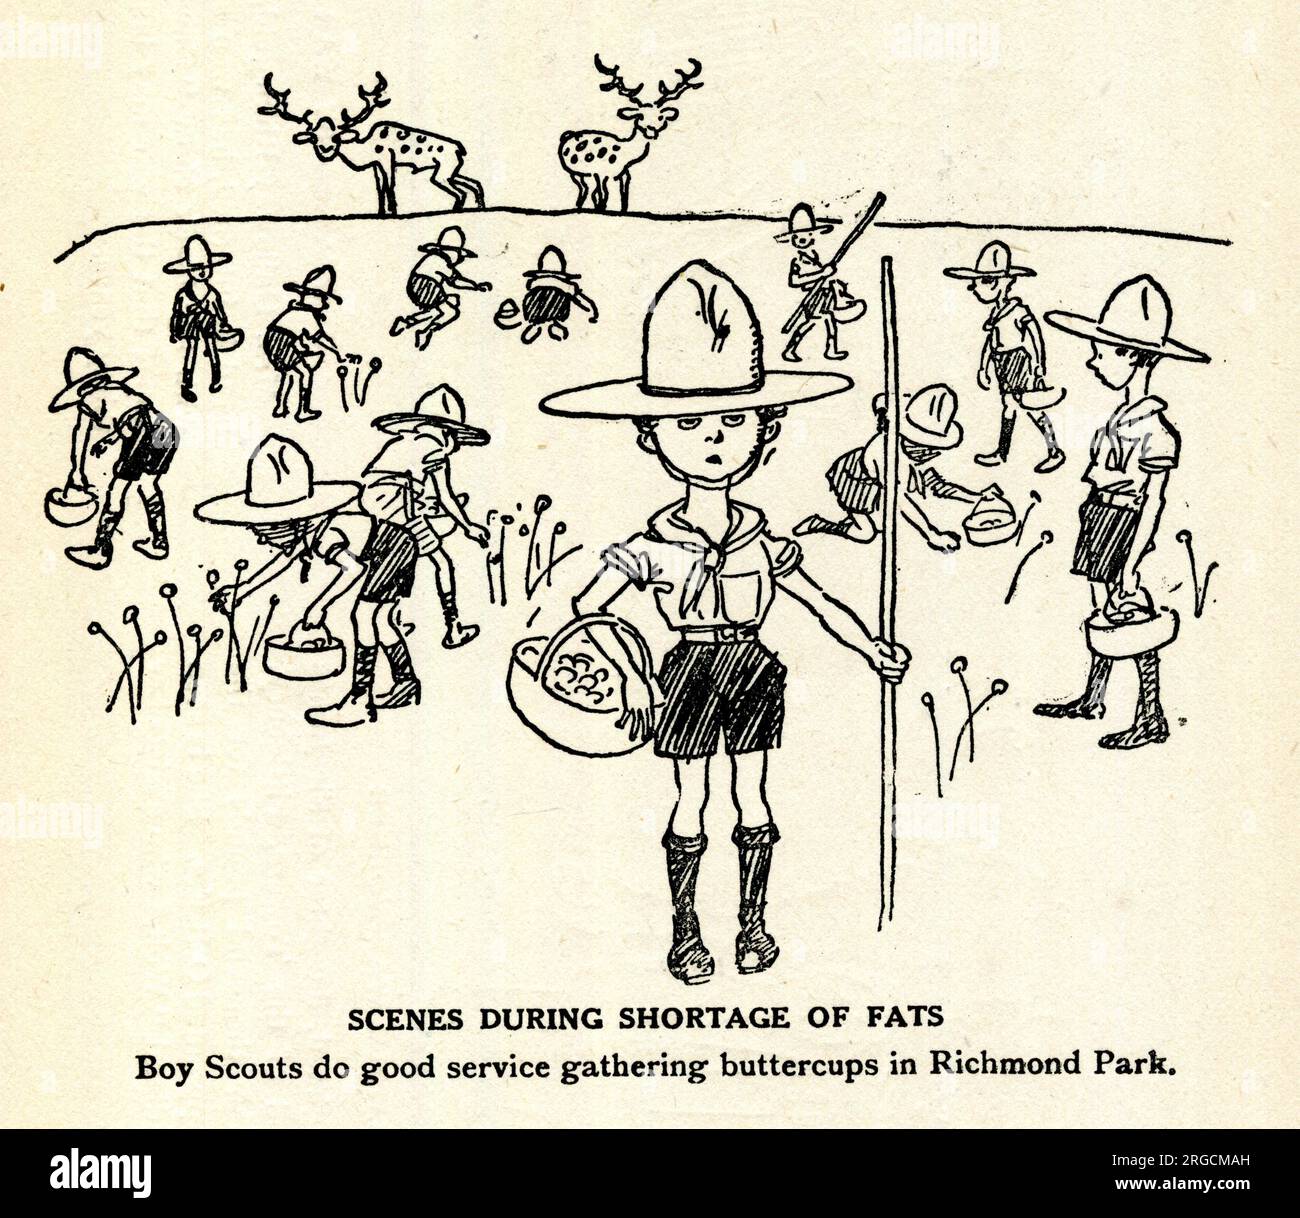 Cartoon, Szenen während der Mangel an Fats, Boy Scouts leisten gute Dienste beim Sammeln von Butterblumen im Richmond Park Stockfoto